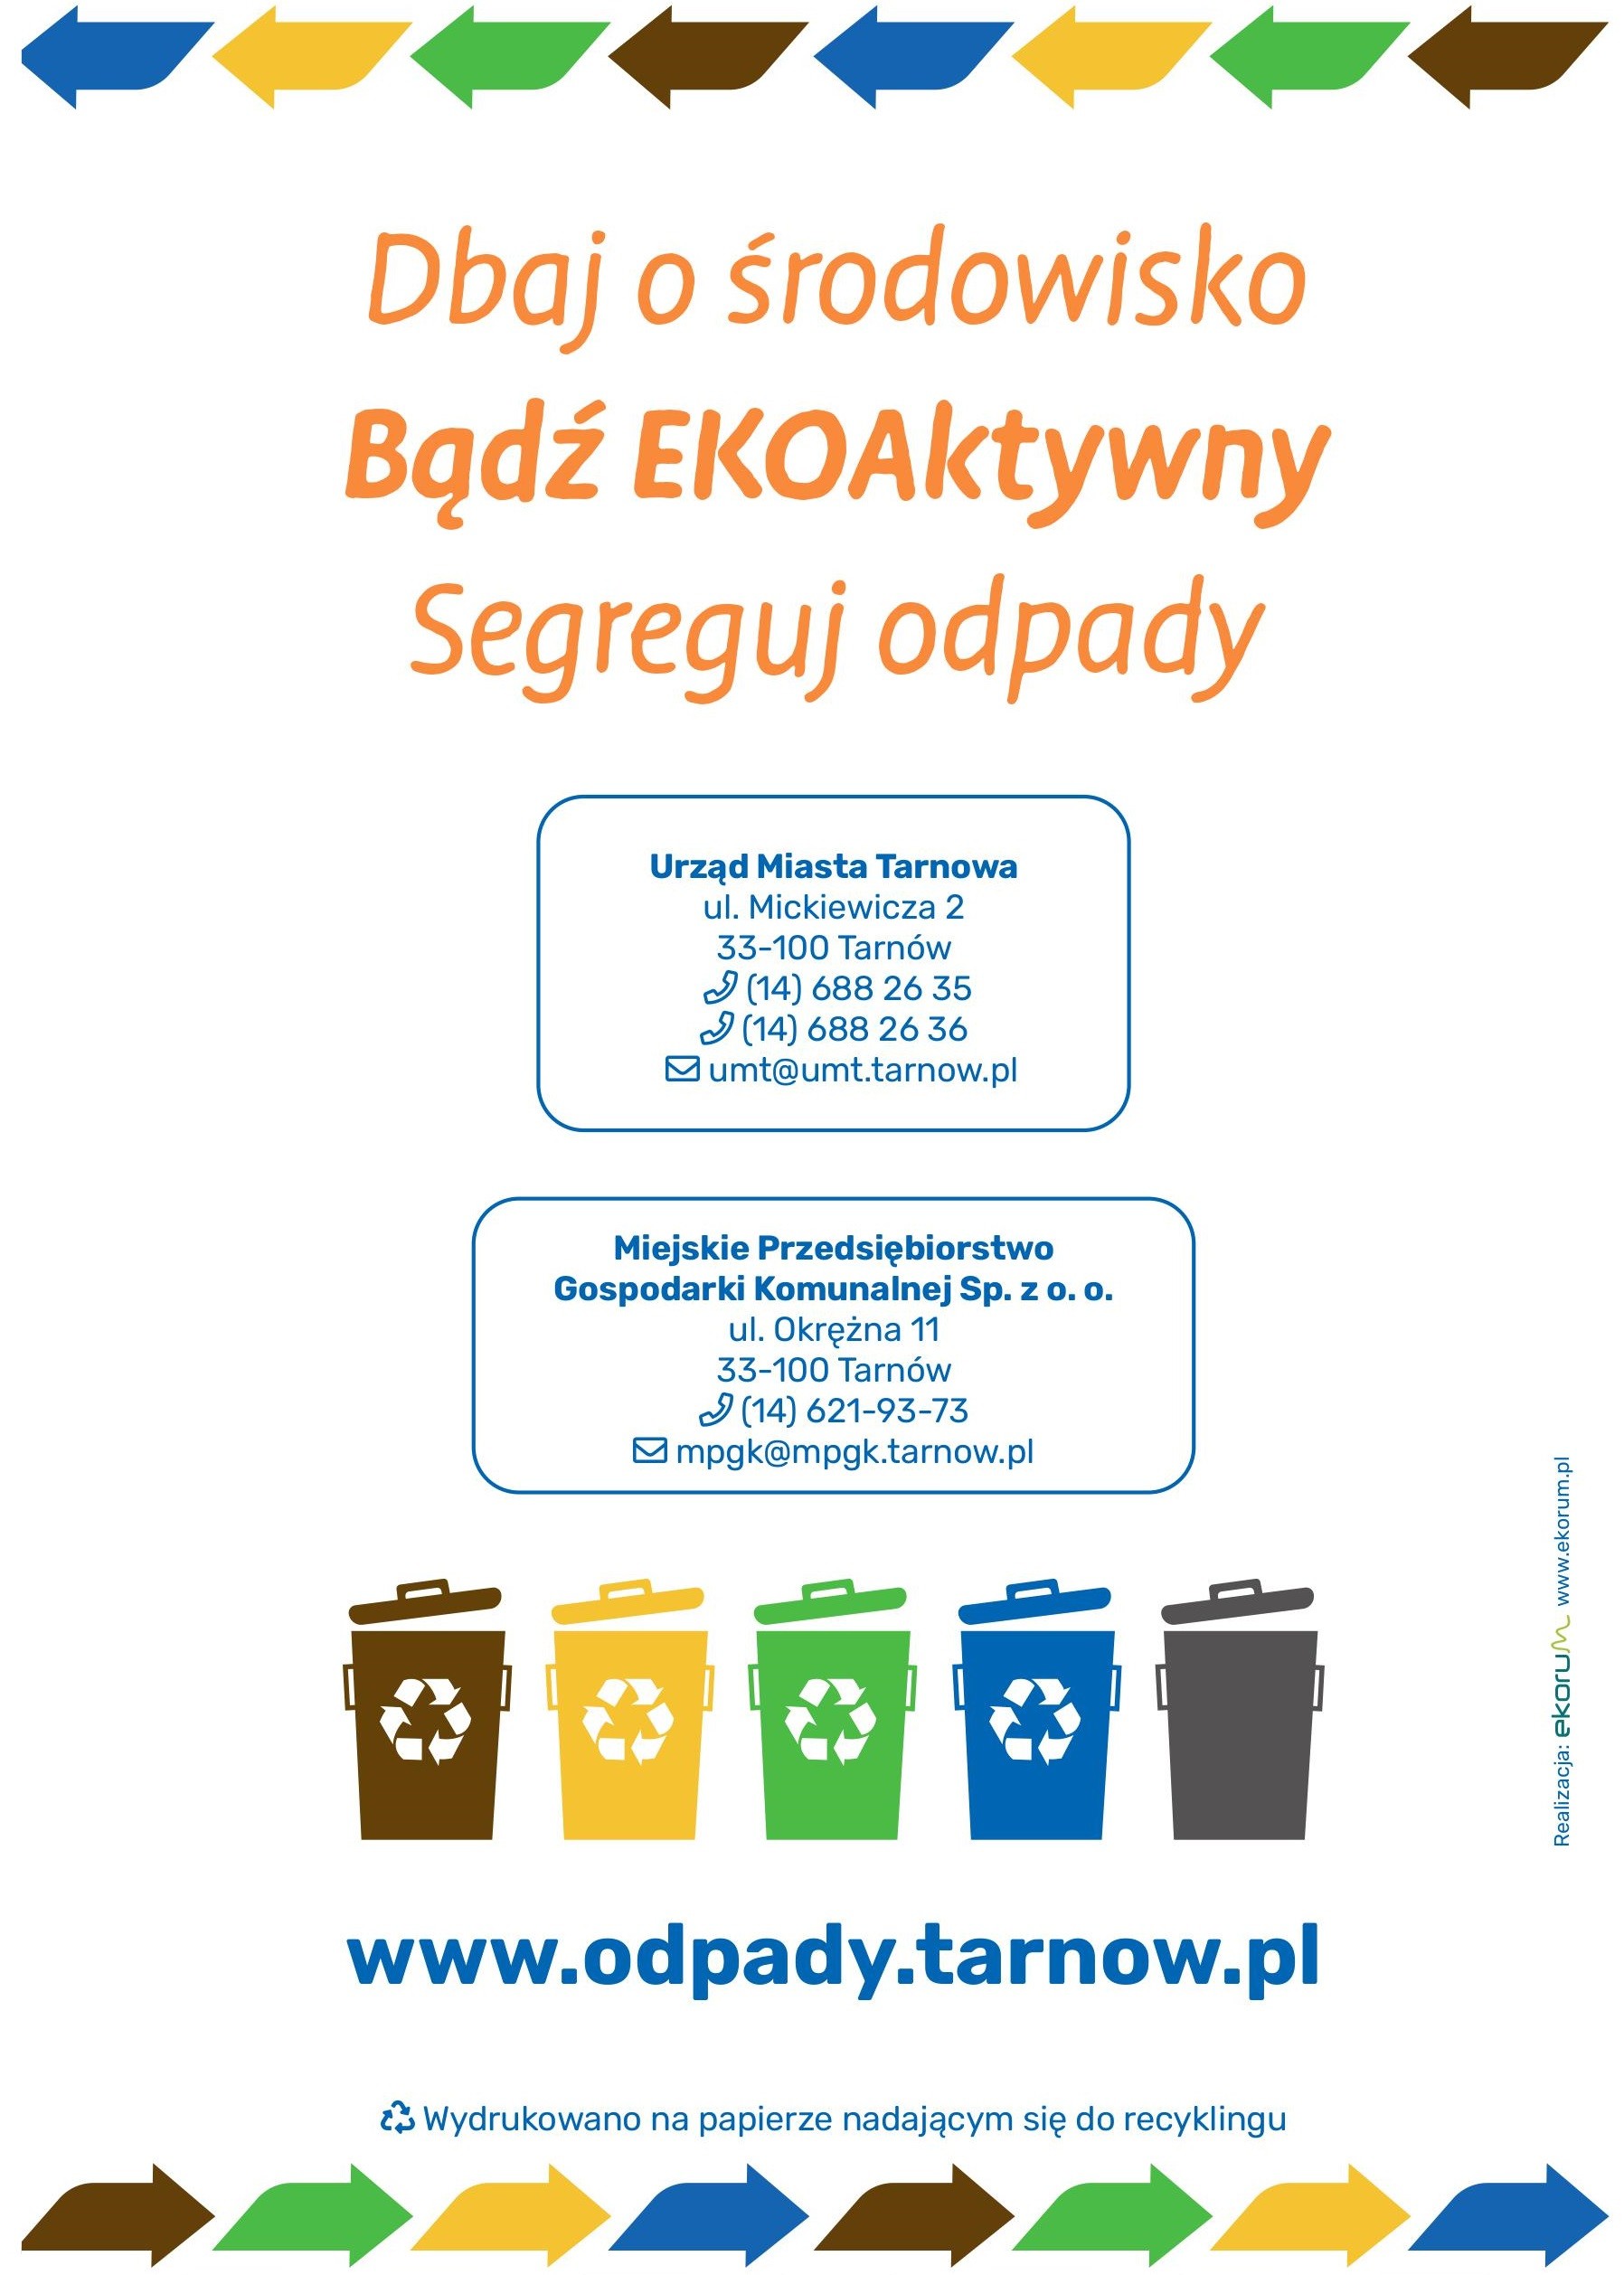 Jak prawidłowo segregować odpady komunalne 8